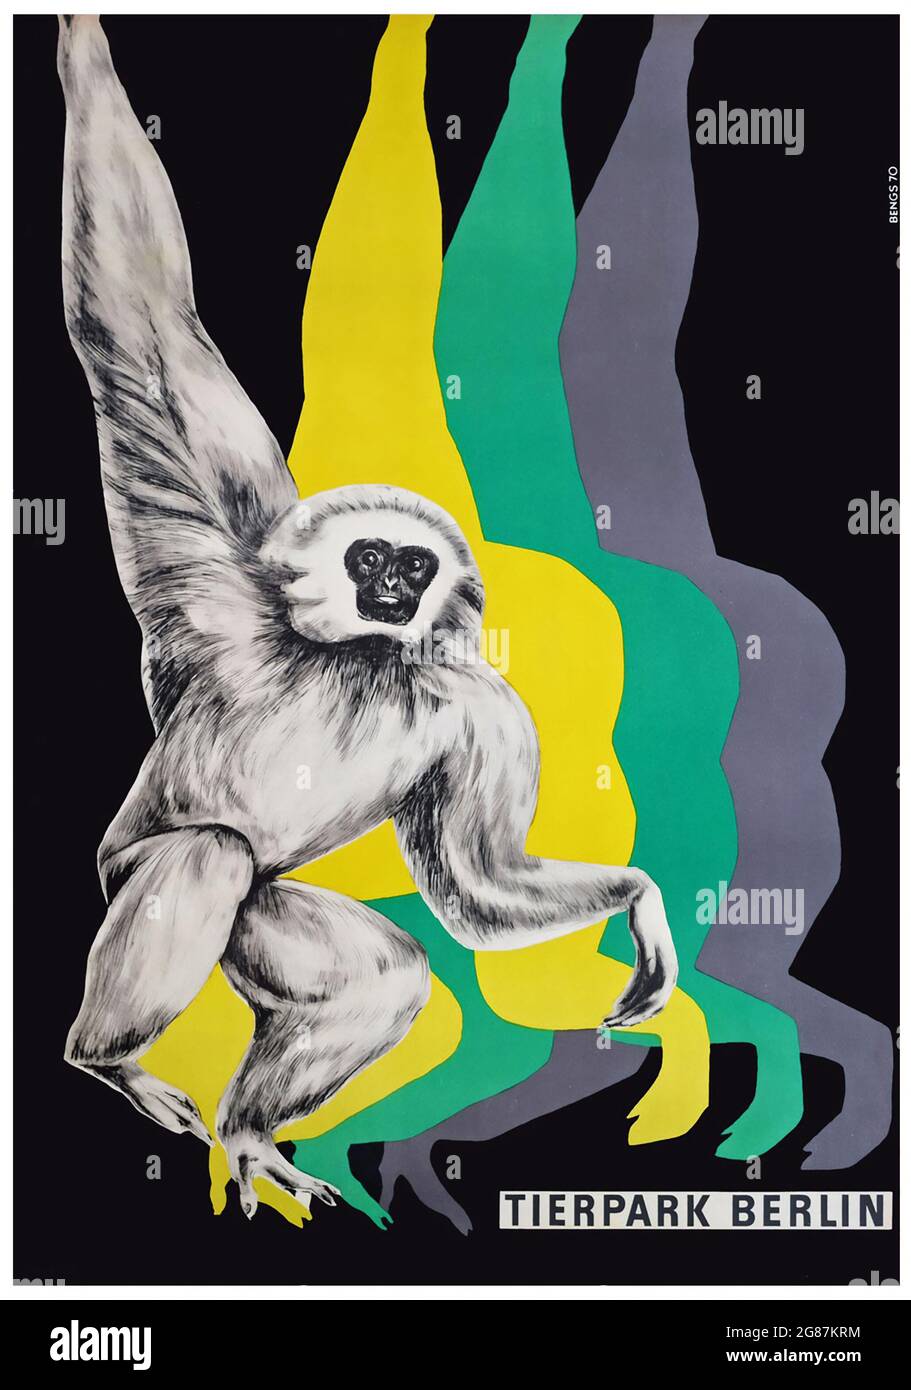 AFFICHE TIERPARK BERLIN – affiche de voyage du singe du zoo de Berlin des années 1970 – Pop Art Design. Banque D'Images